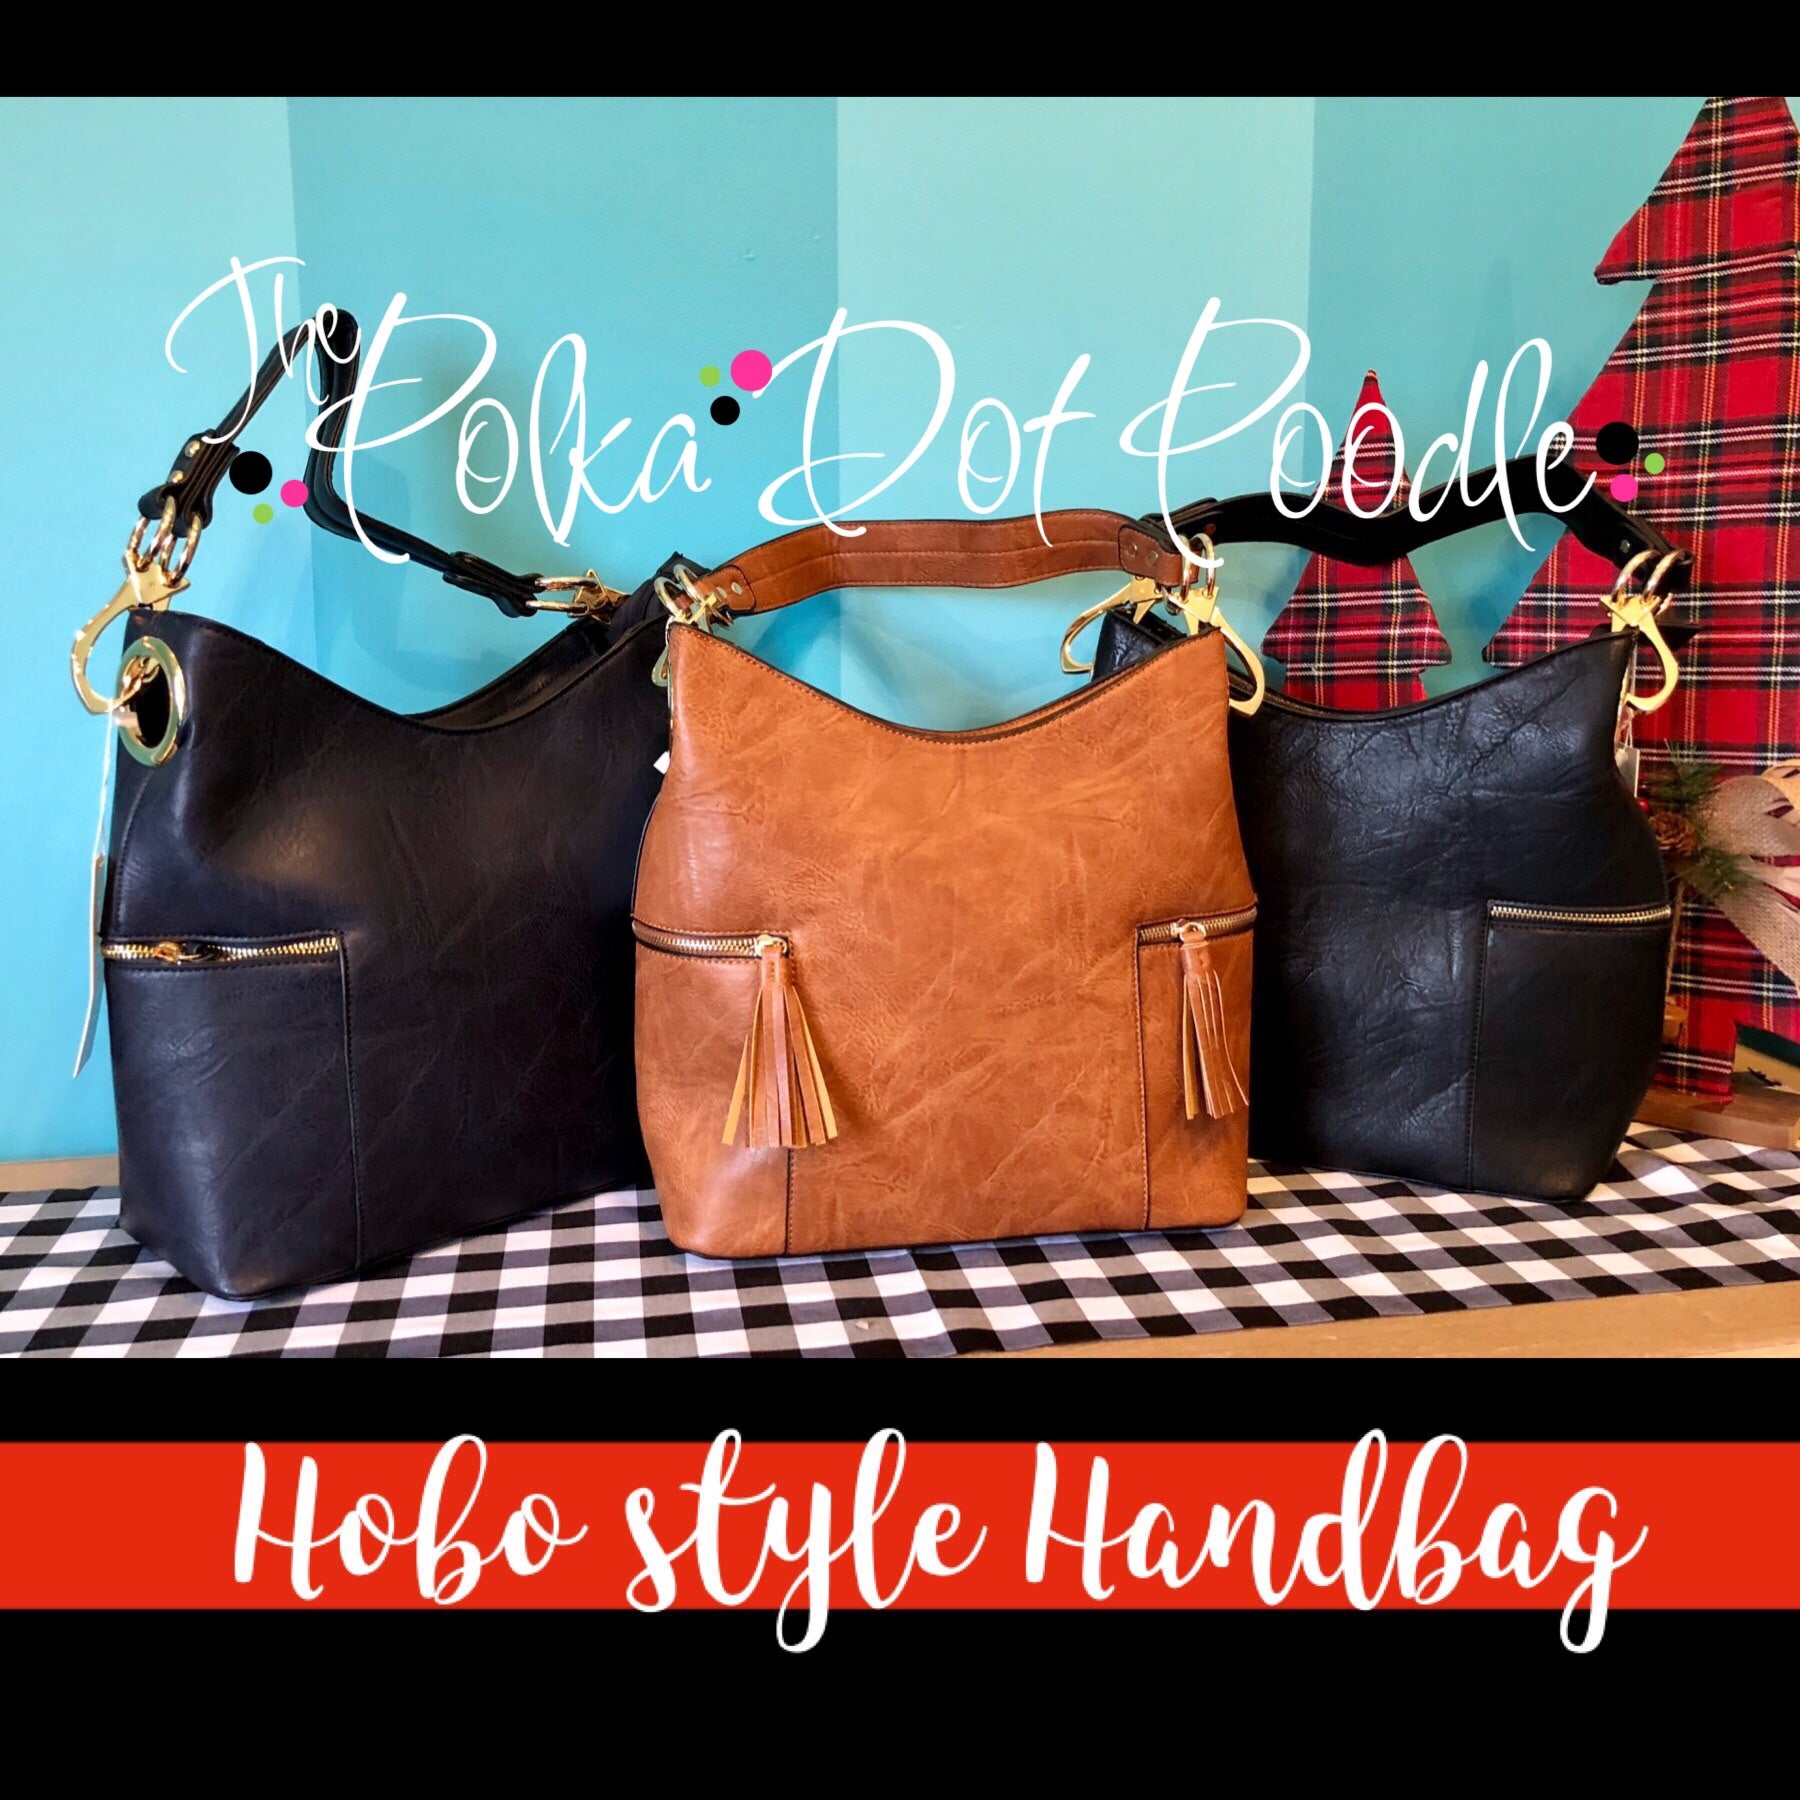 Hobo style Handbag